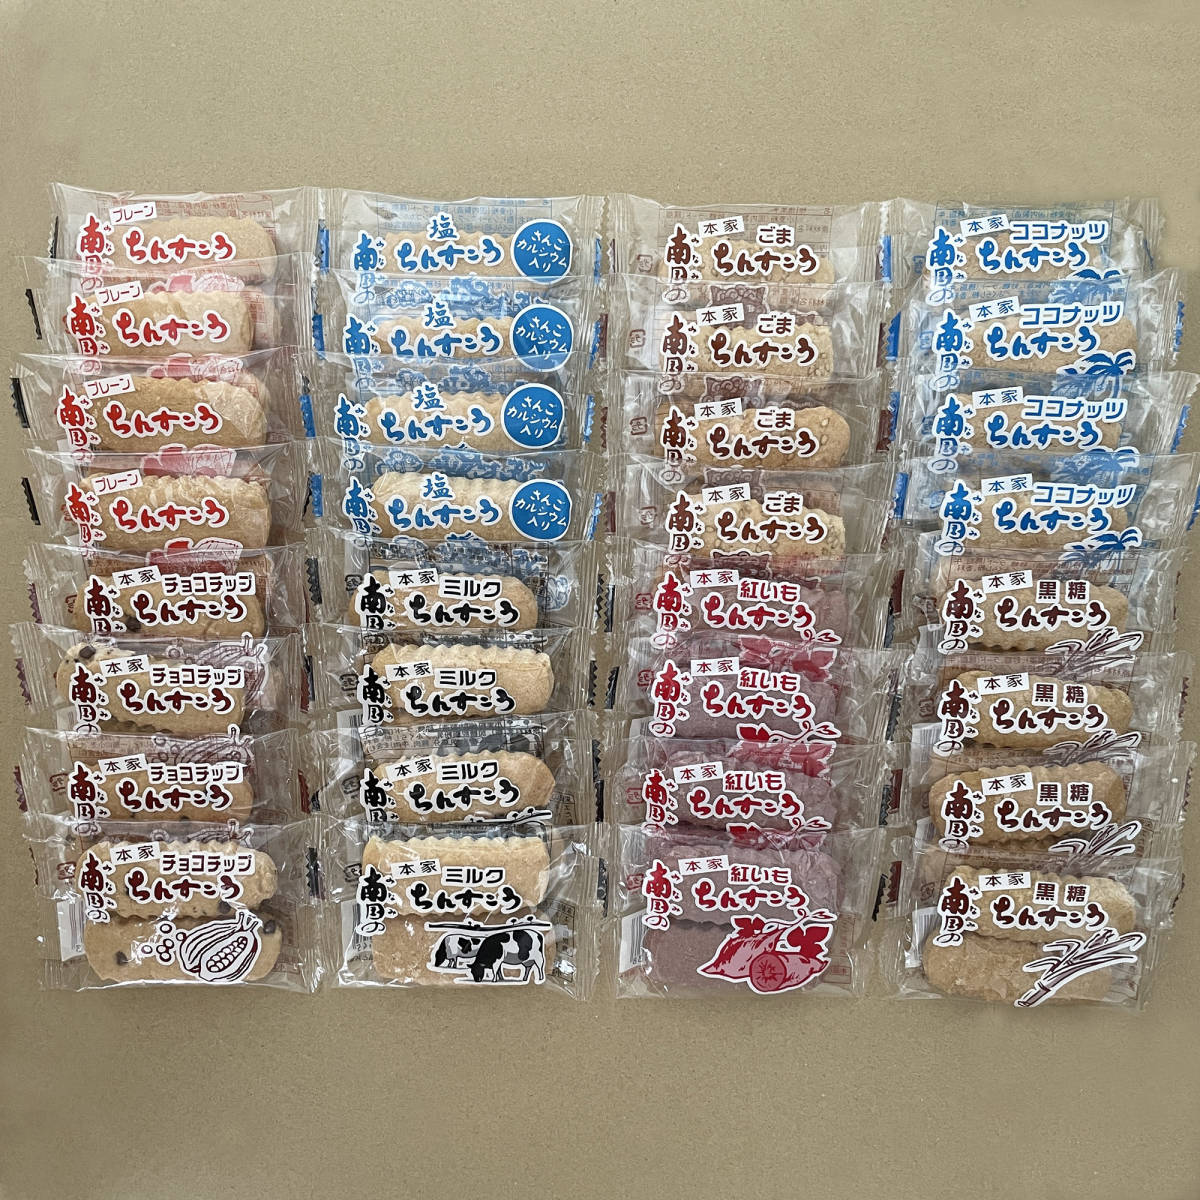 ちんすこう 8種類の詰め合わせA 32袋 64個 沖縄 お菓子 南国製菓_画像1